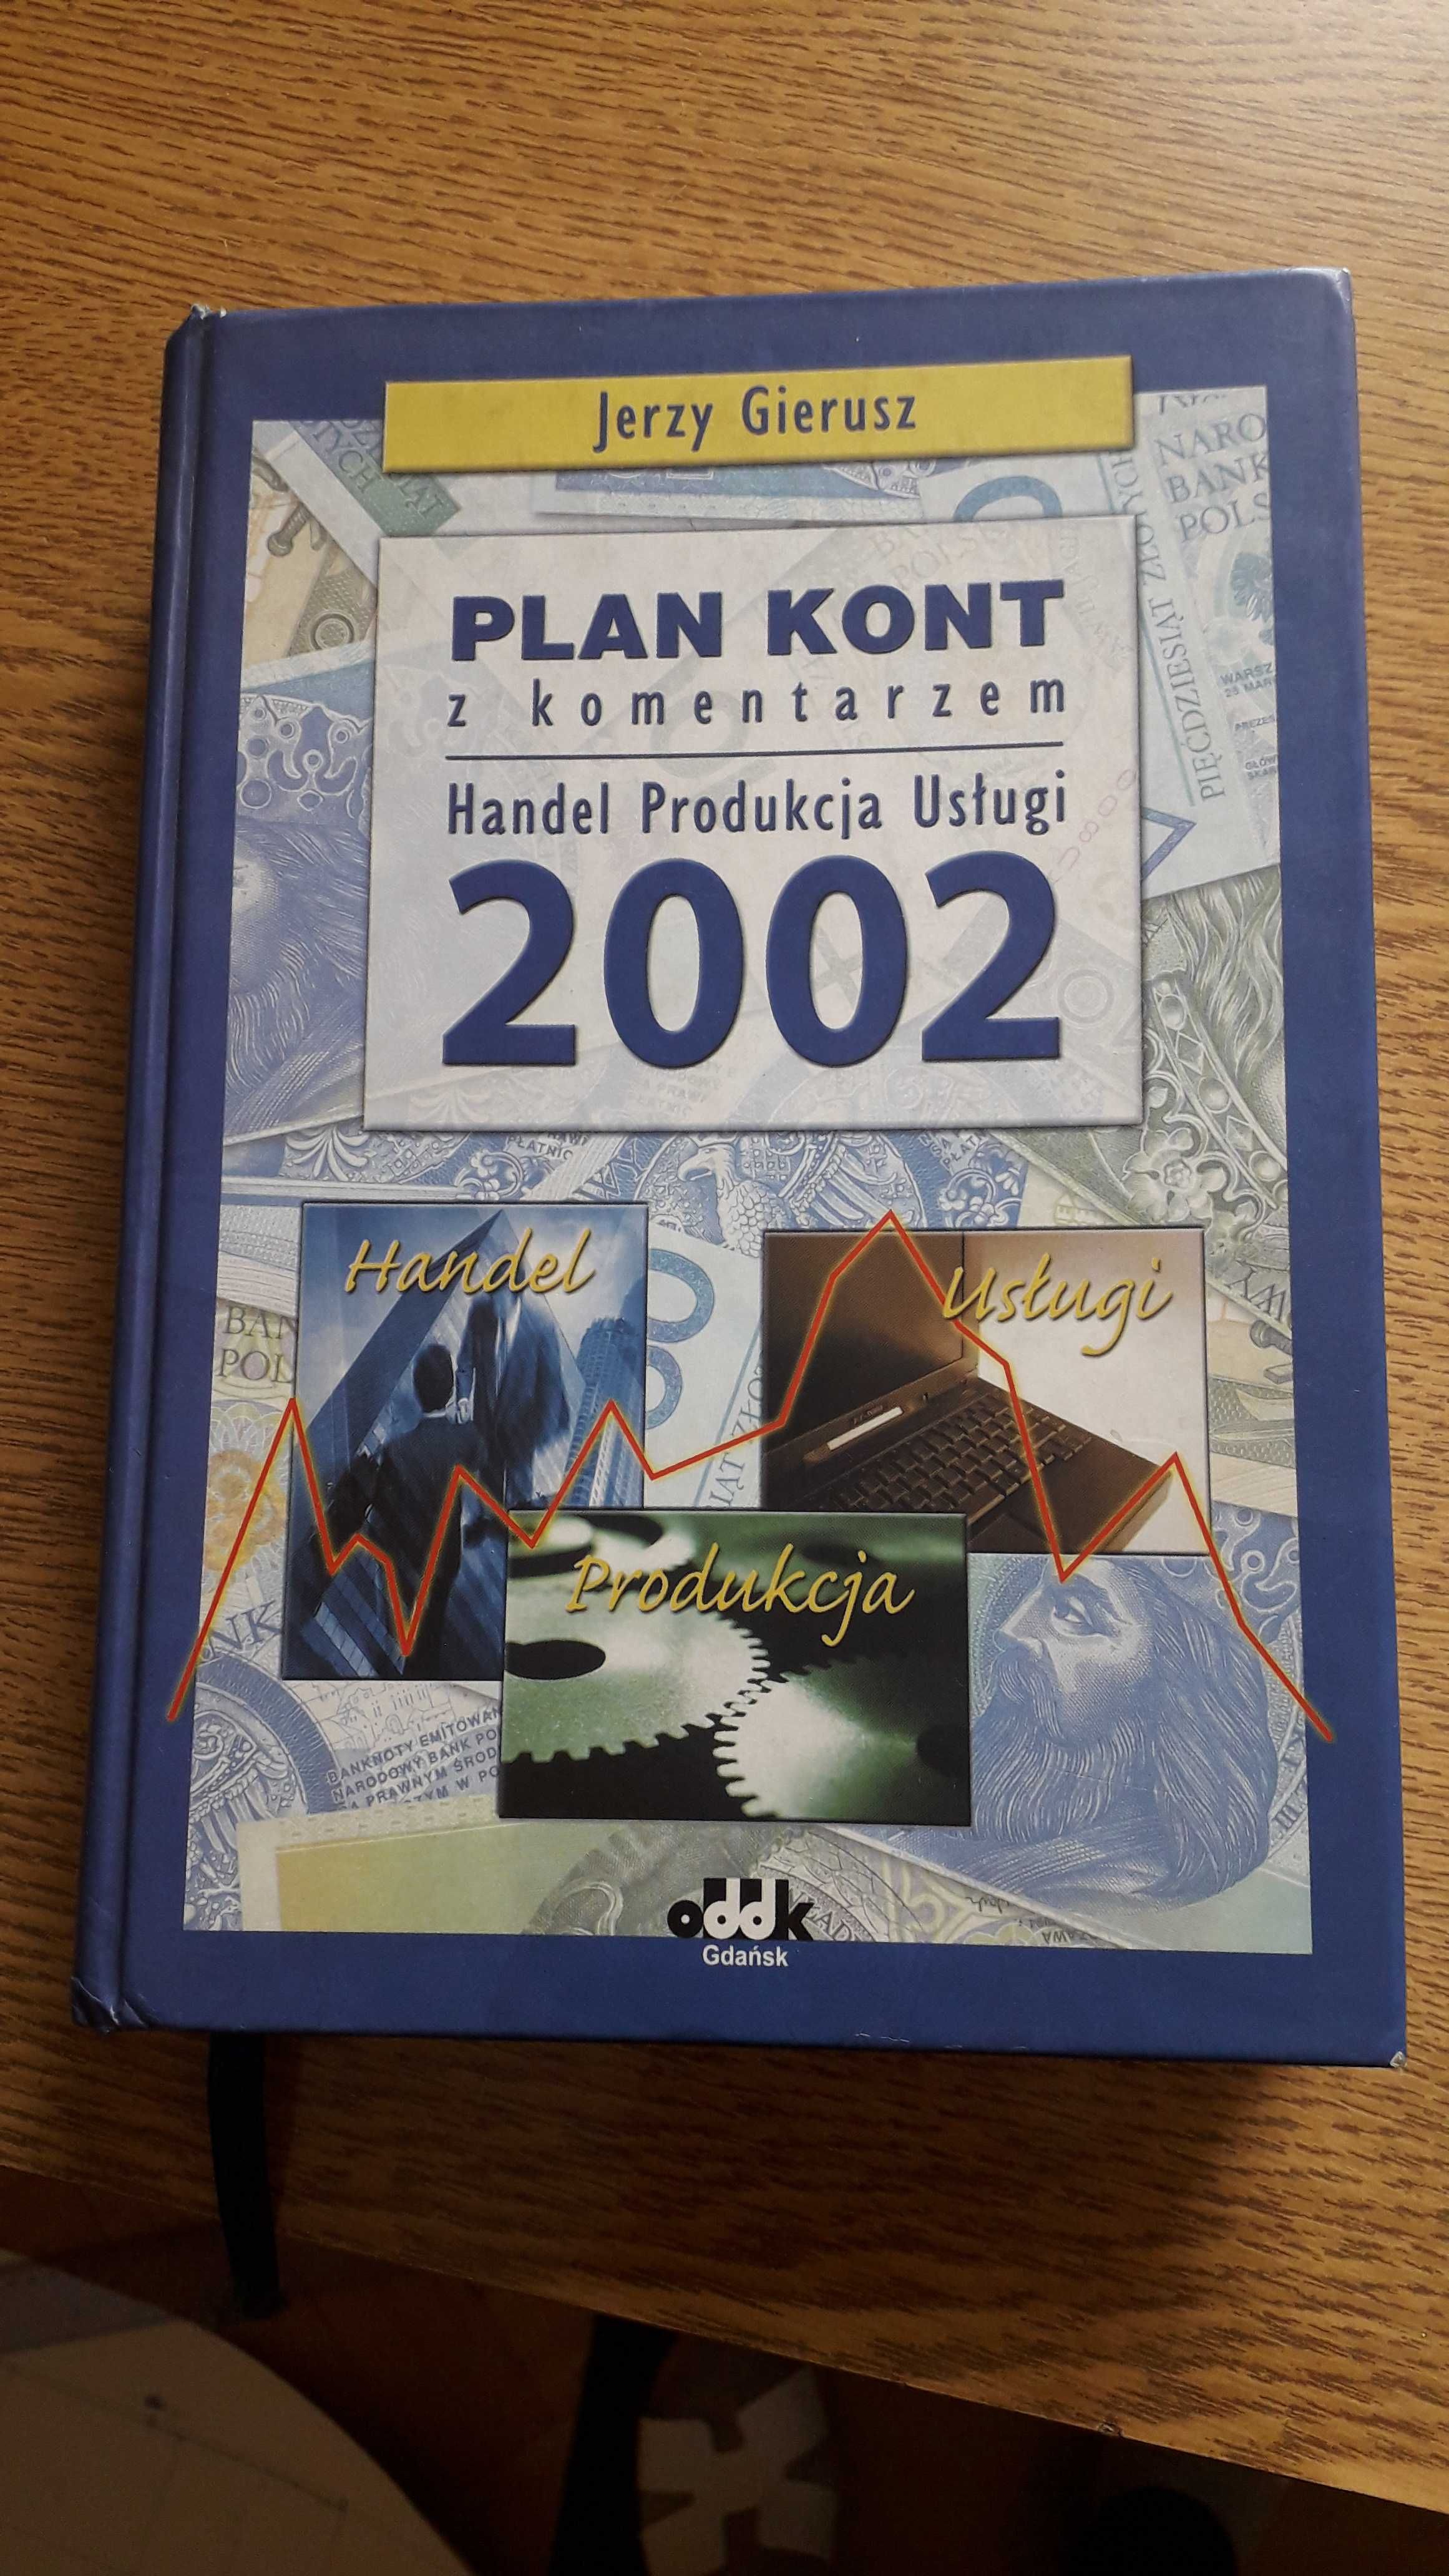 Plan kont z komentarzem Handel Produkcja Usługi 2002 Jerzy Gierusz